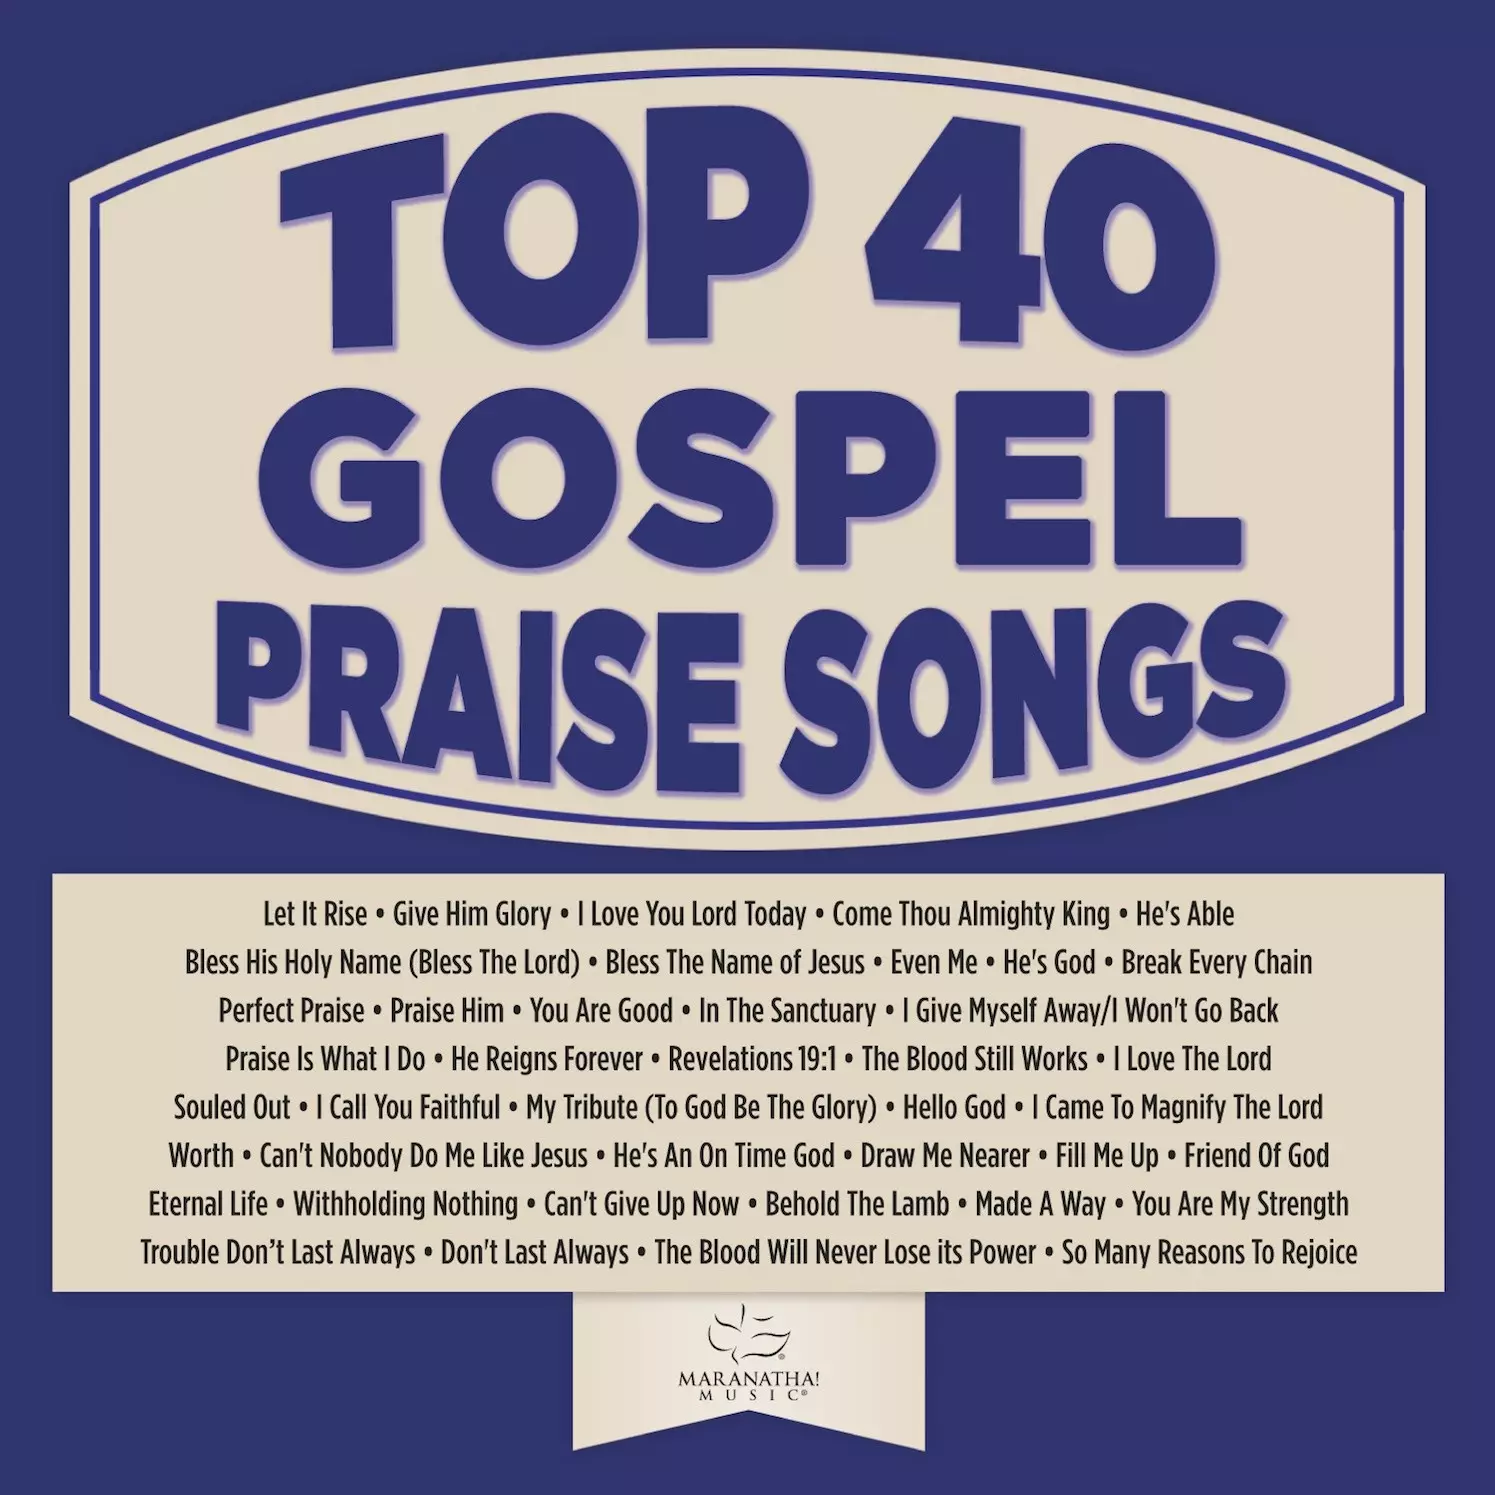 Top 40 Gospel Praise Songs